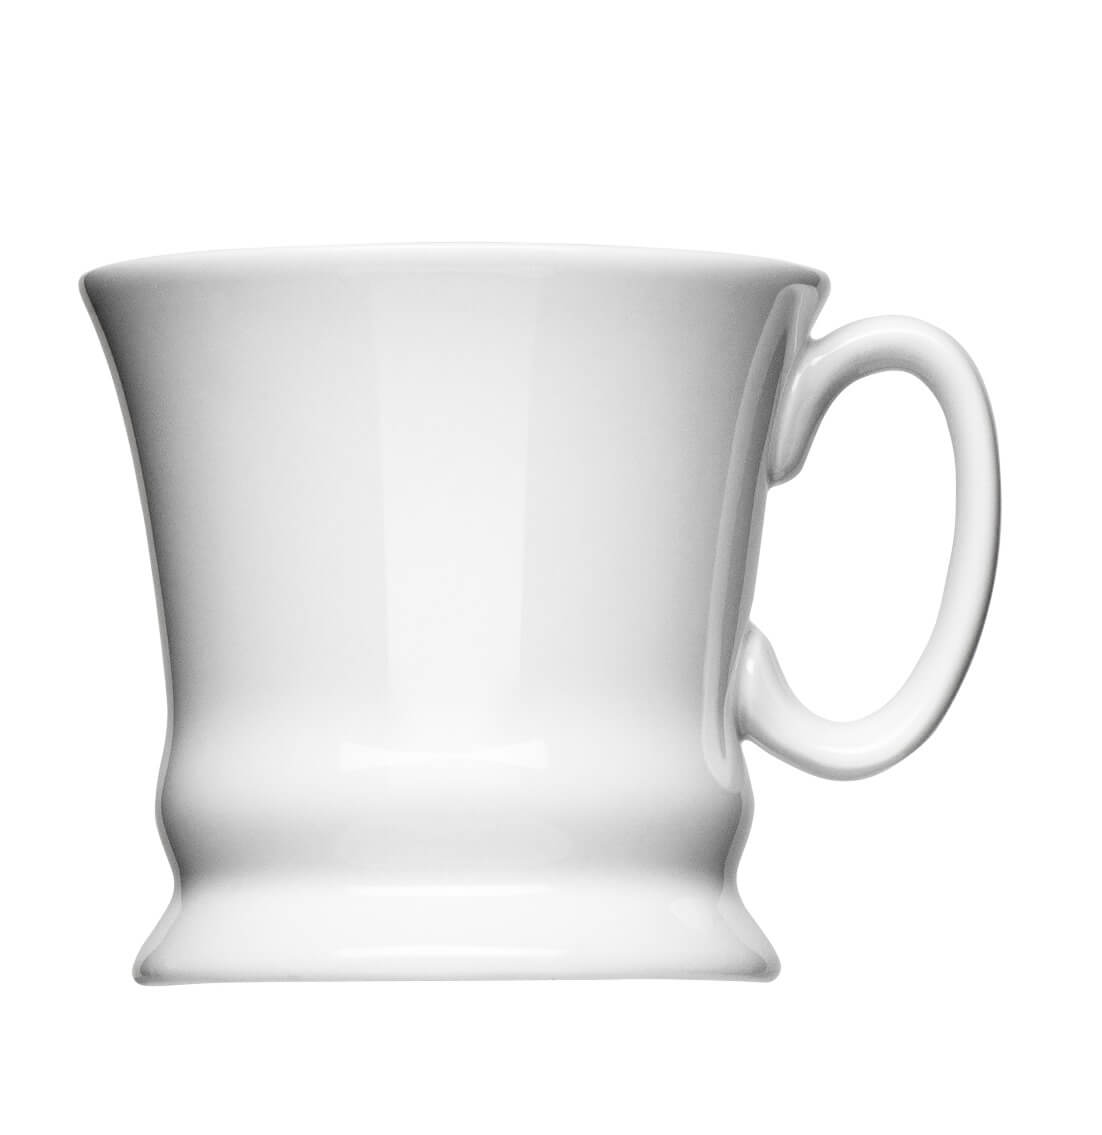 Kaffeehaferl Form 110 zum bedrucken mit einem Logo oder einer Grafik als Werbegeschenk, Werbeartikel oder Werbemittel